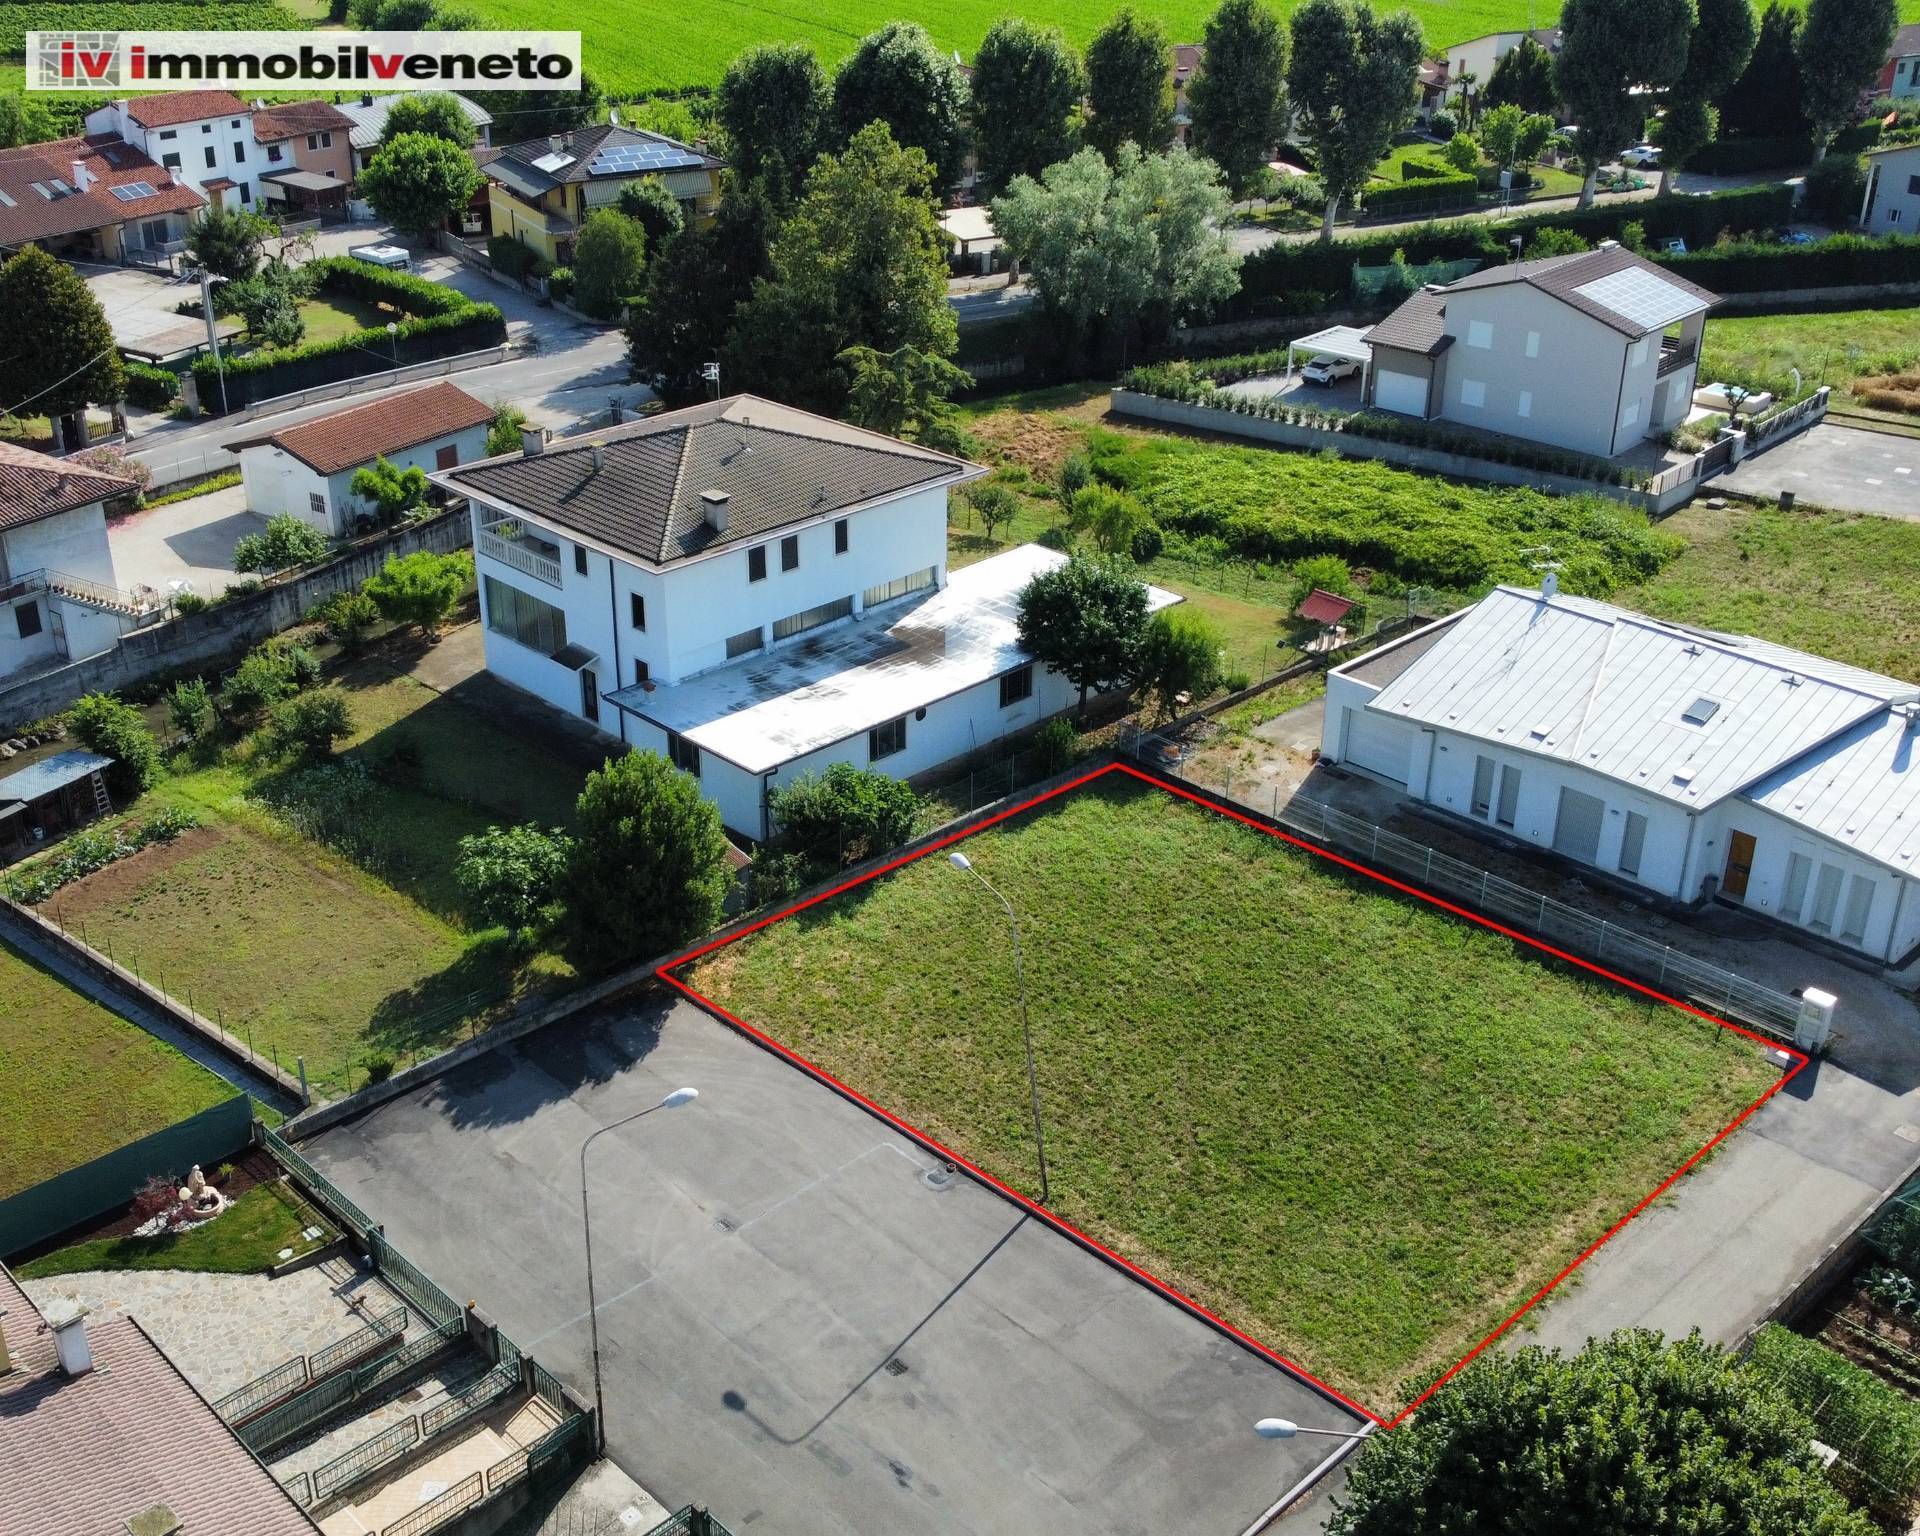 Terreno Edificabile Residenziale in vendita a Brendola, 9999 locali, zona Località: V?, prezzo € 130.000 | PortaleAgenzieImmobiliari.it